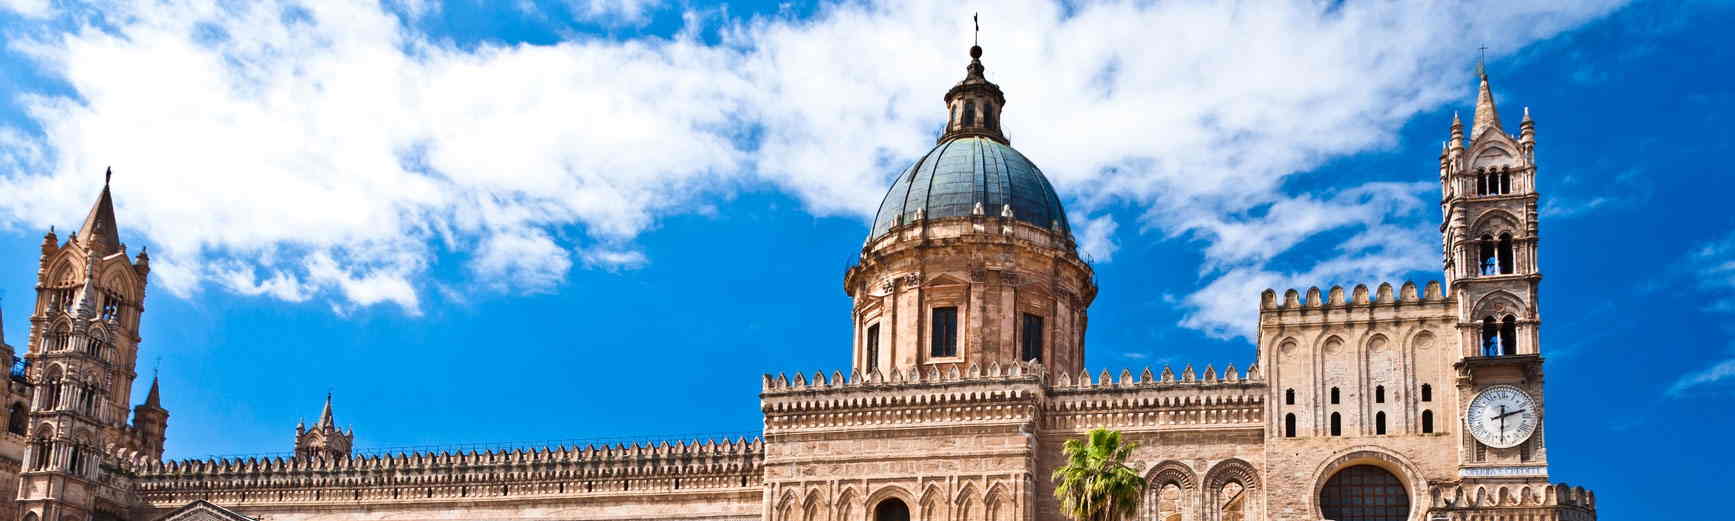 Palermo, Sicilia: panorama sulla cattedrale